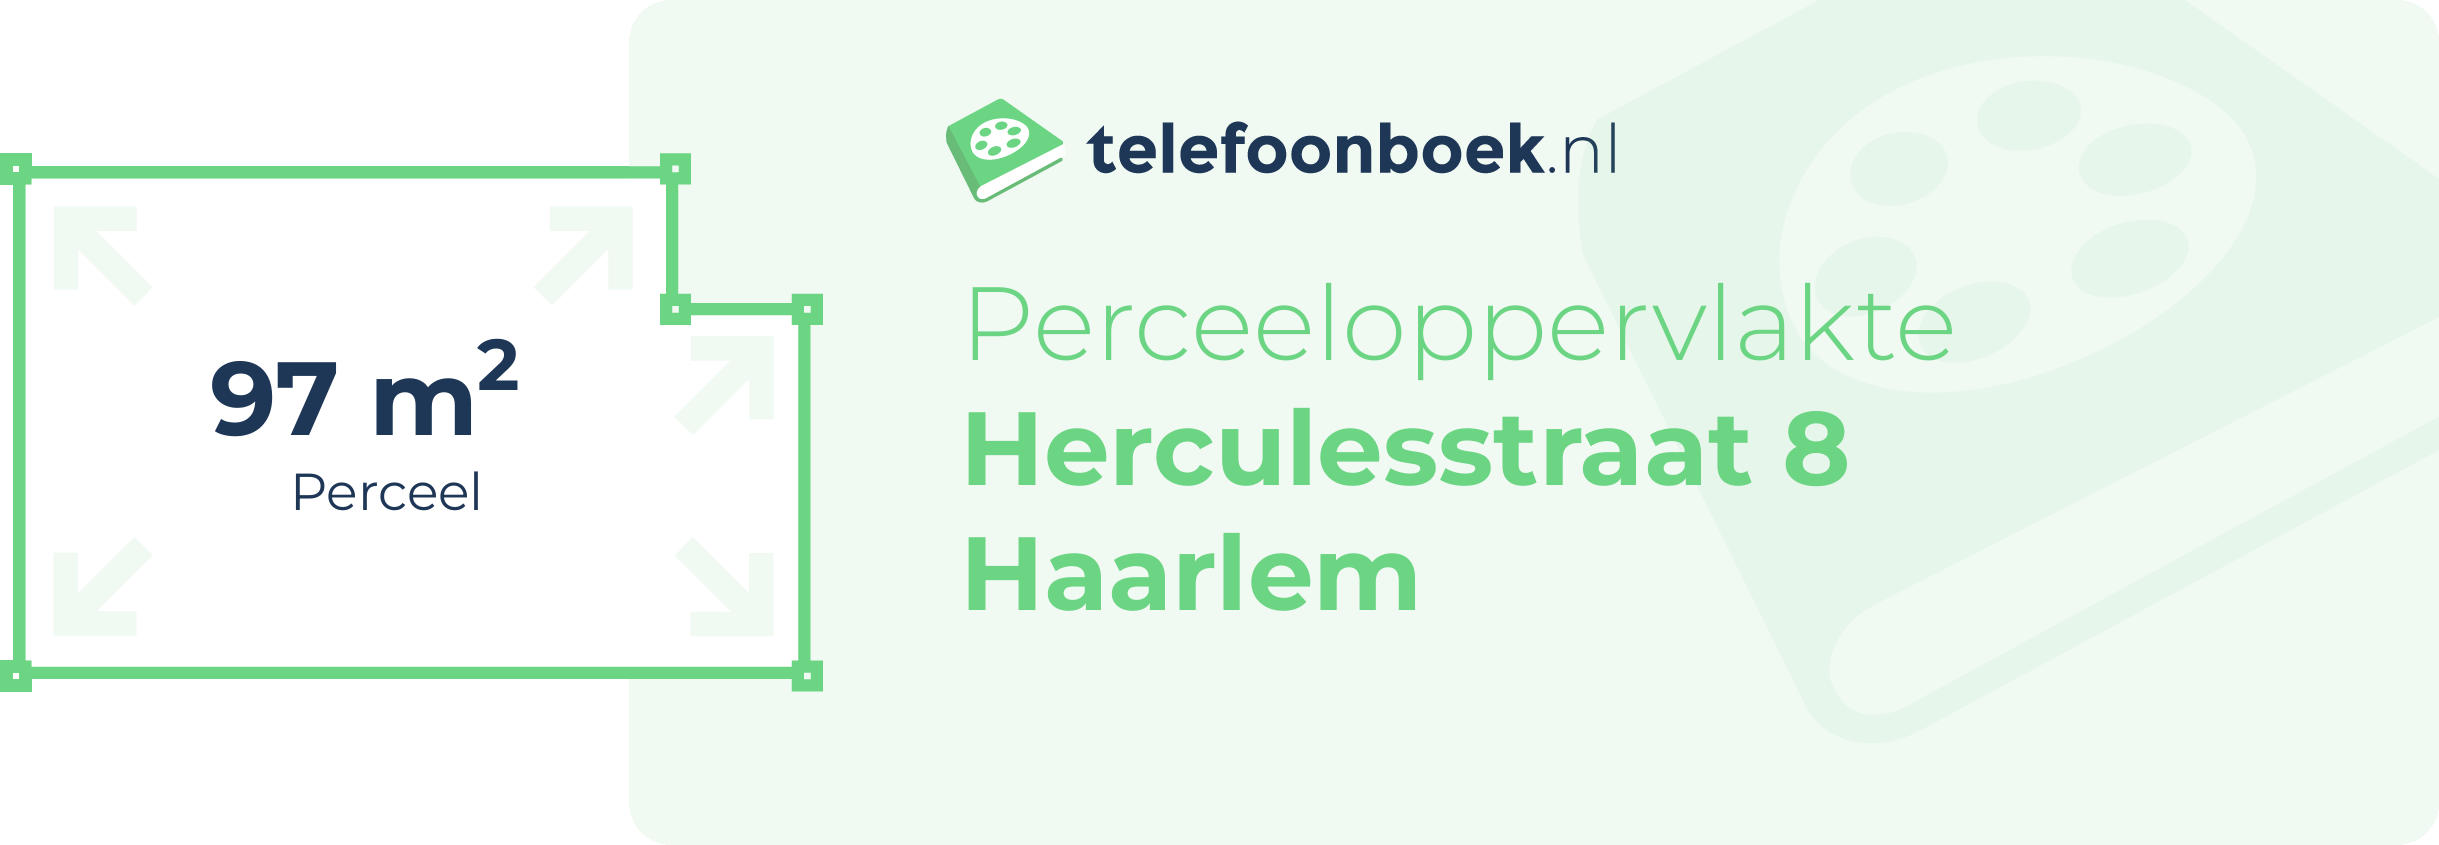 Perceeloppervlakte Herculesstraat 8 Haarlem